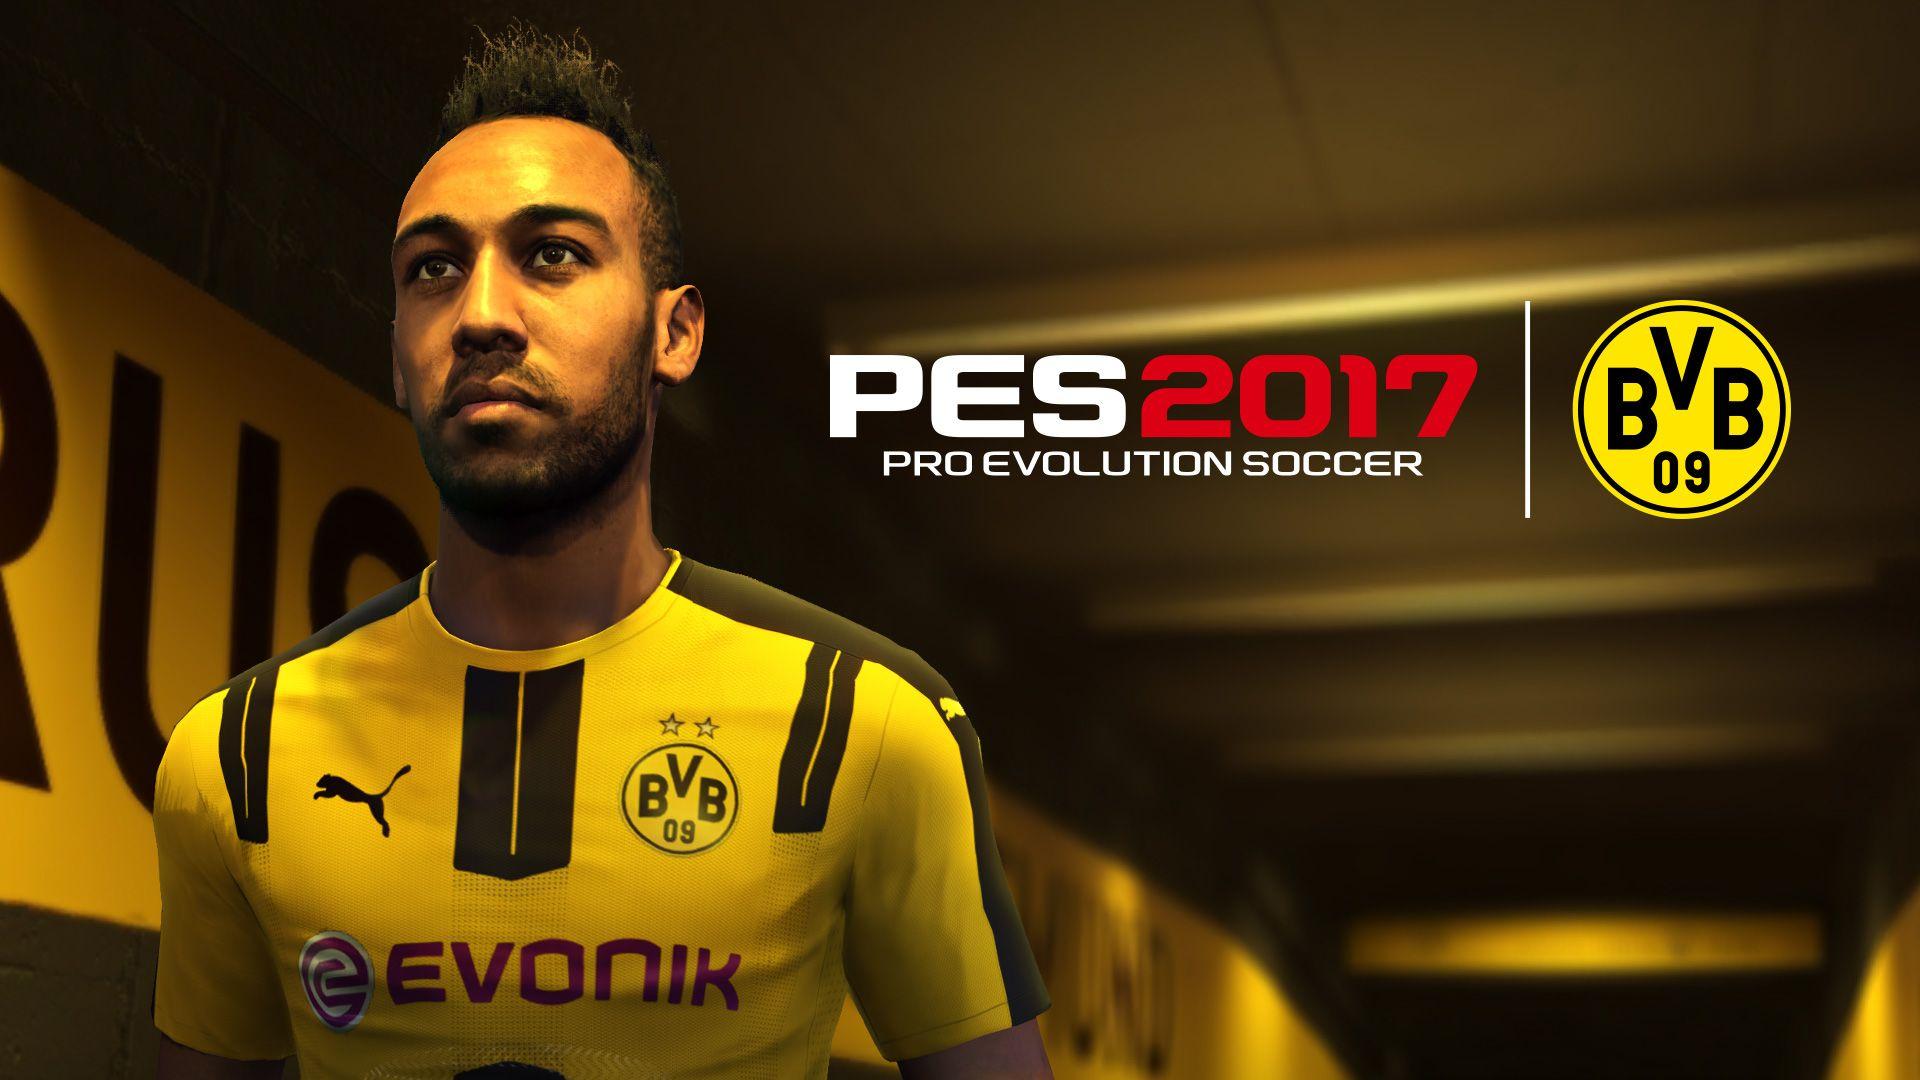 معلومات المُنتج. Pro Evolution Soccer 2017 Official Website